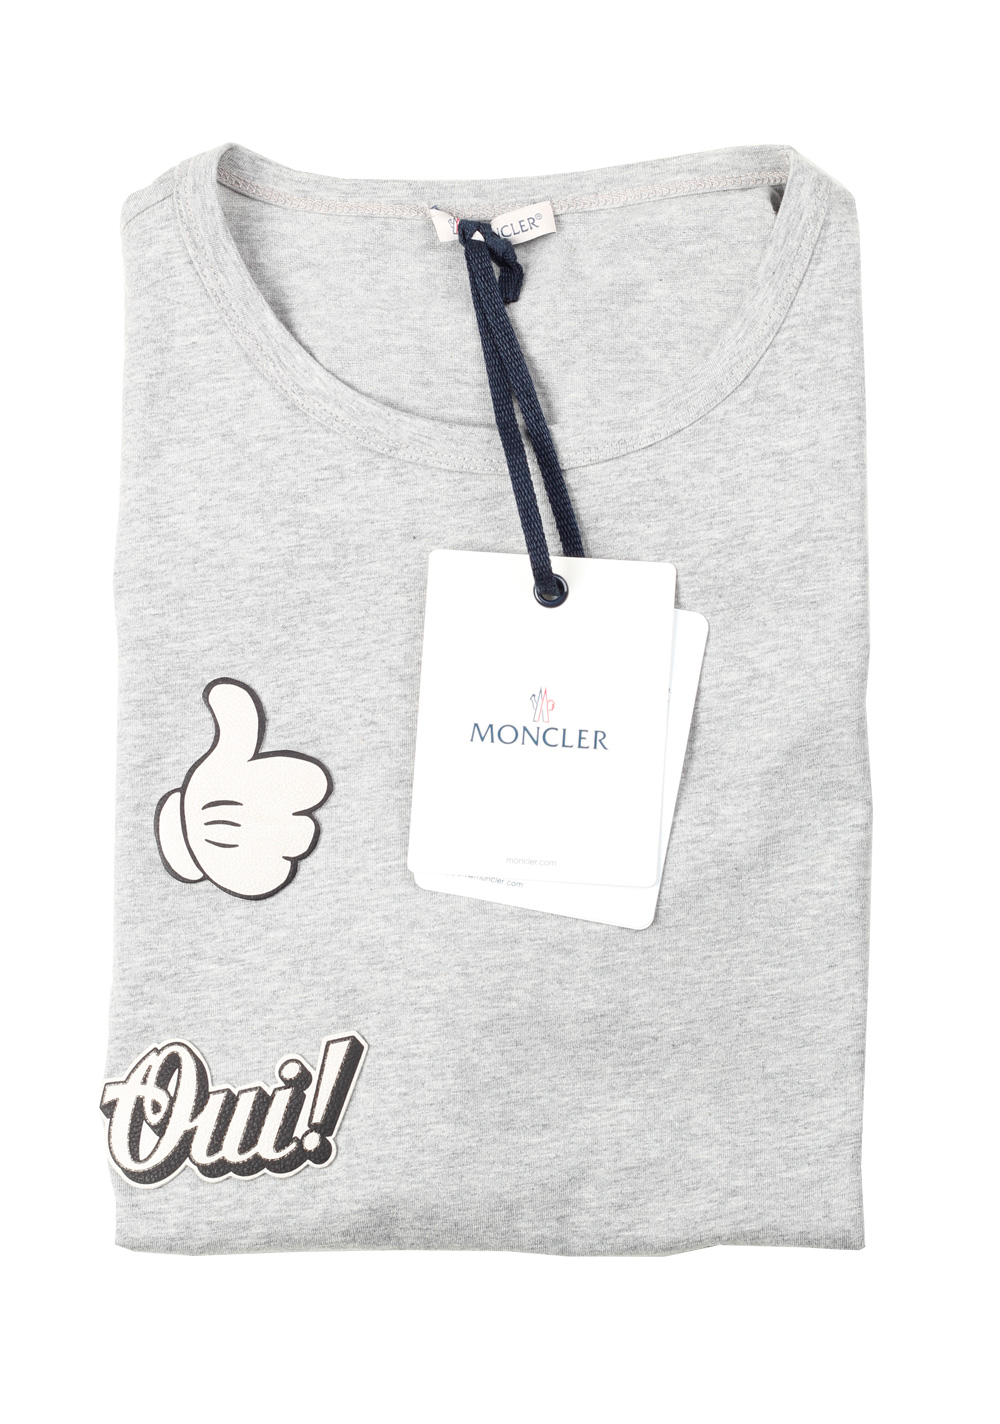 Moncler Crew Neck Tee Shirt Size S / 36R U.S. Gray | Costume Limité